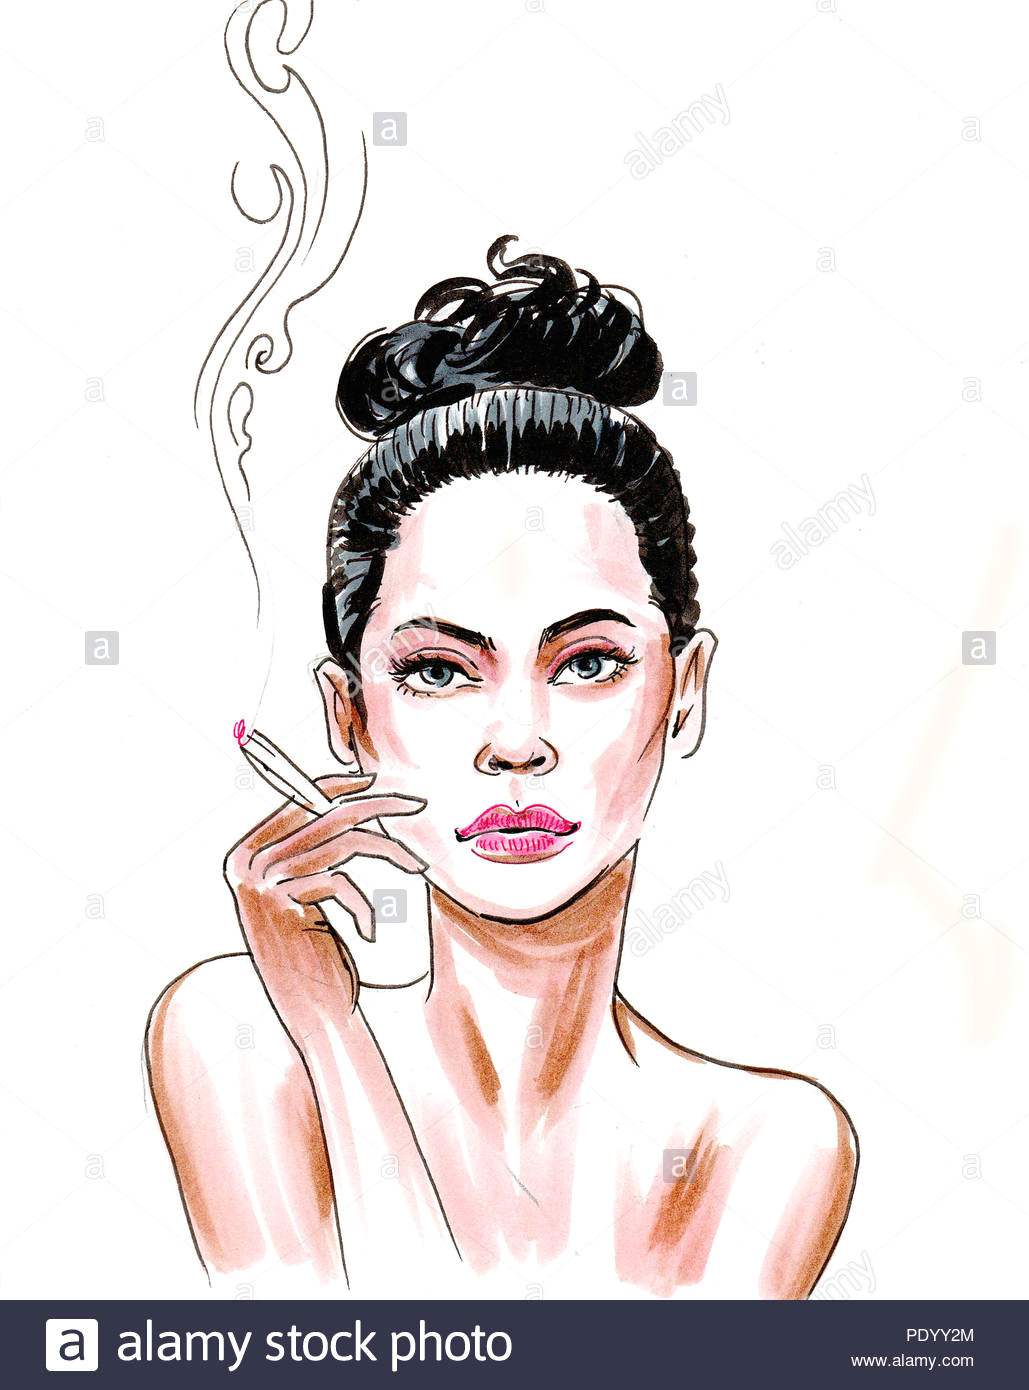 Drawing Of Girl Smoking Weed Girl Smoking Weed Stock Photos Girl Smoking Weed Stock Images Alamy